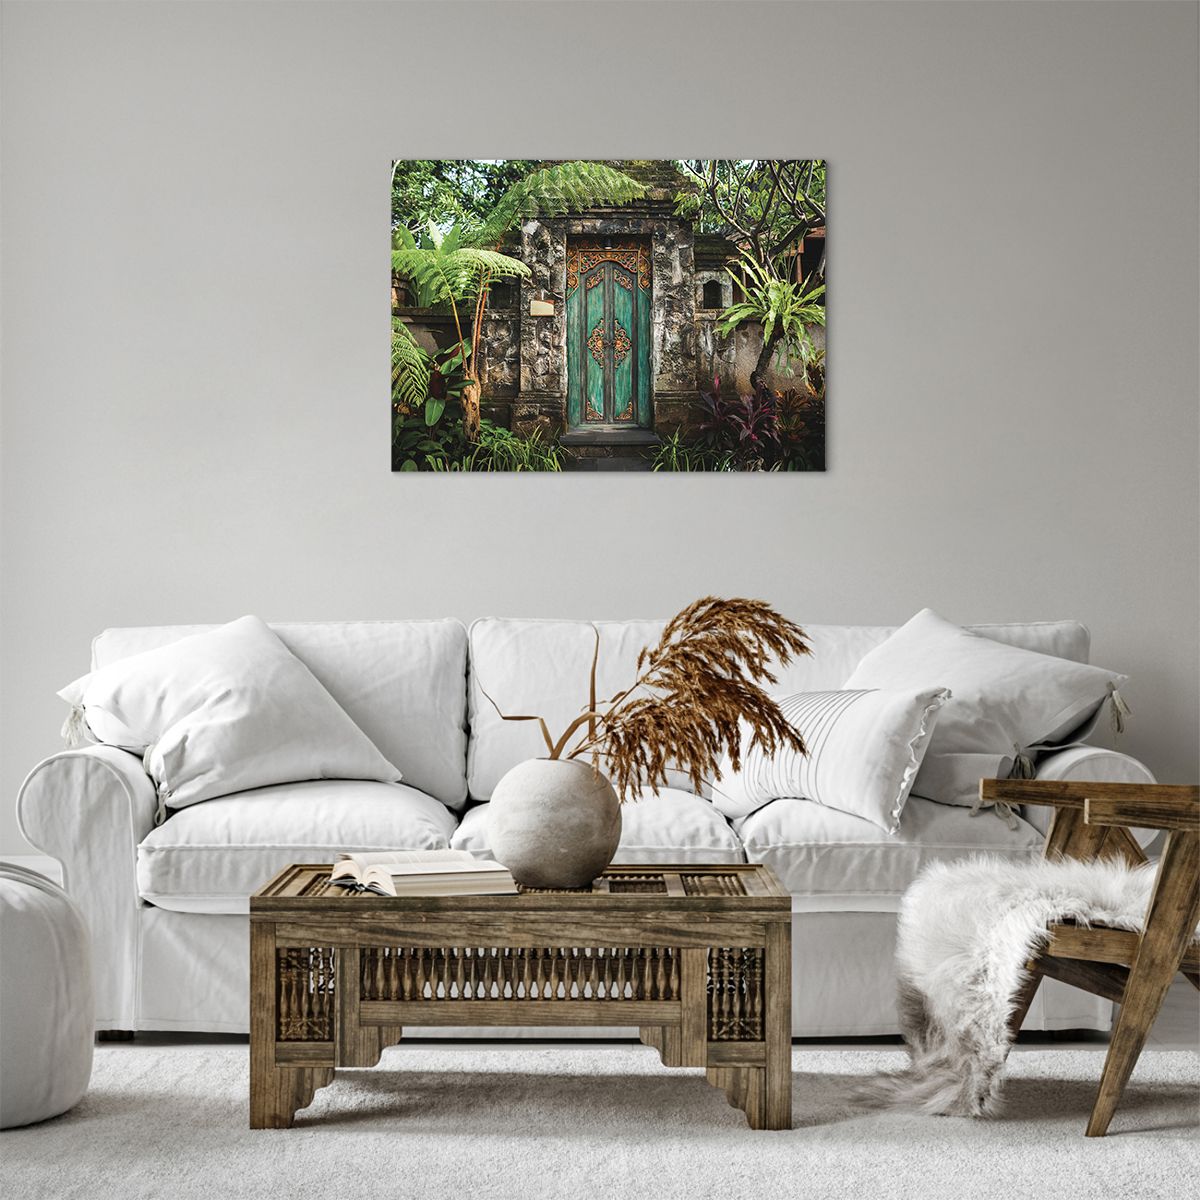 Bild auf Leinwand Tür Mit Ornament, Bild auf Leinwand Die Architektur, Bild auf Leinwand Geheimnis, Bild auf Leinwand Bali-Insel, Bild auf Leinwand Indonesien